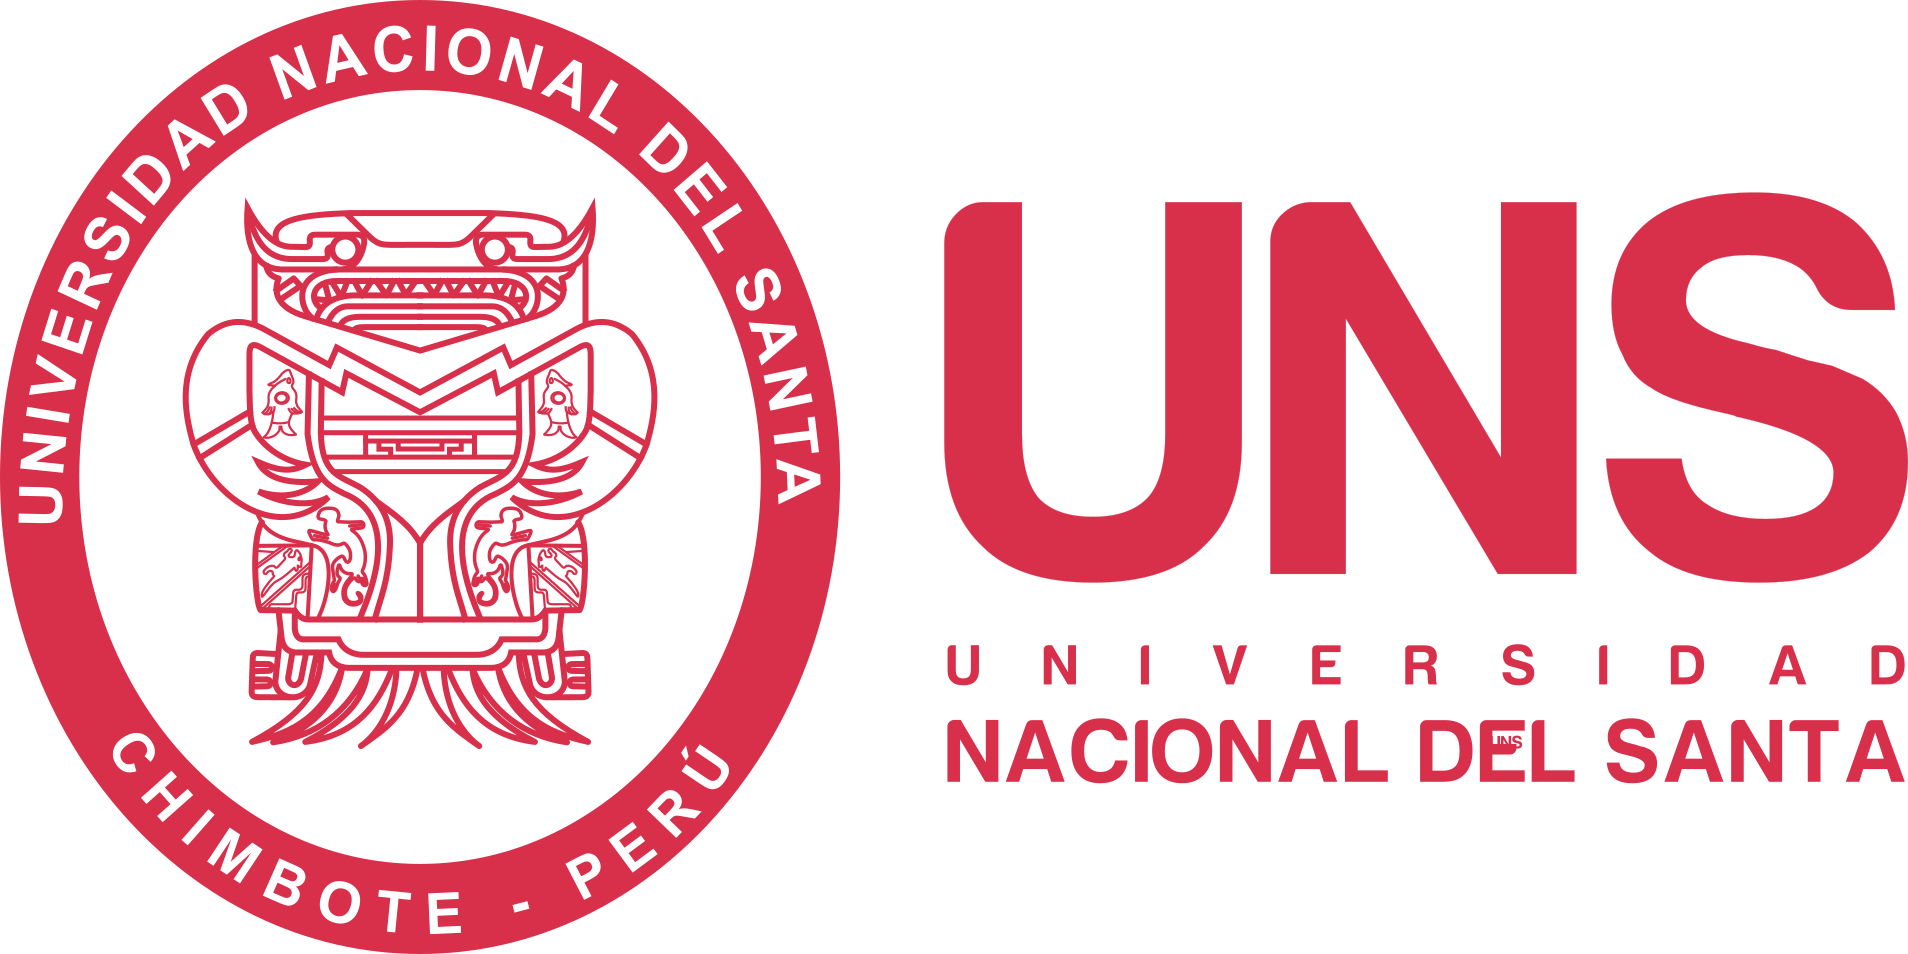 Universidad Nacional del Santa (UNS)